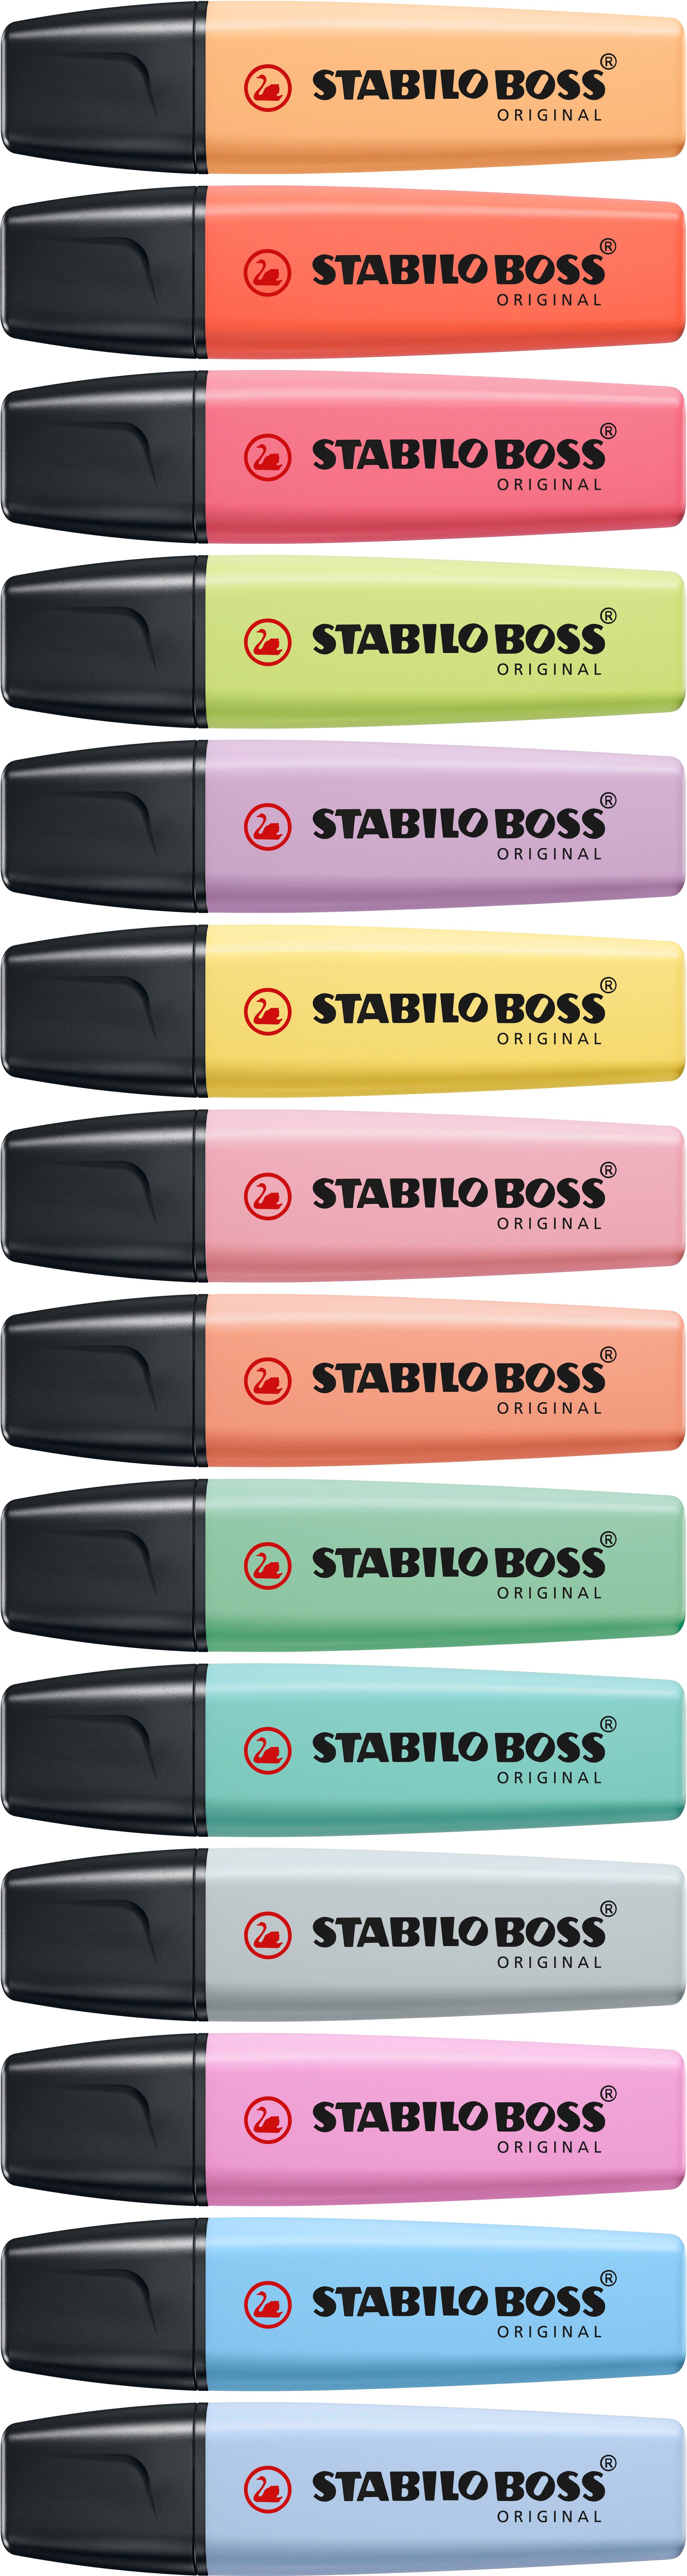 Marcador STABILO BOSS Original - Set de 15 colores - Vértice